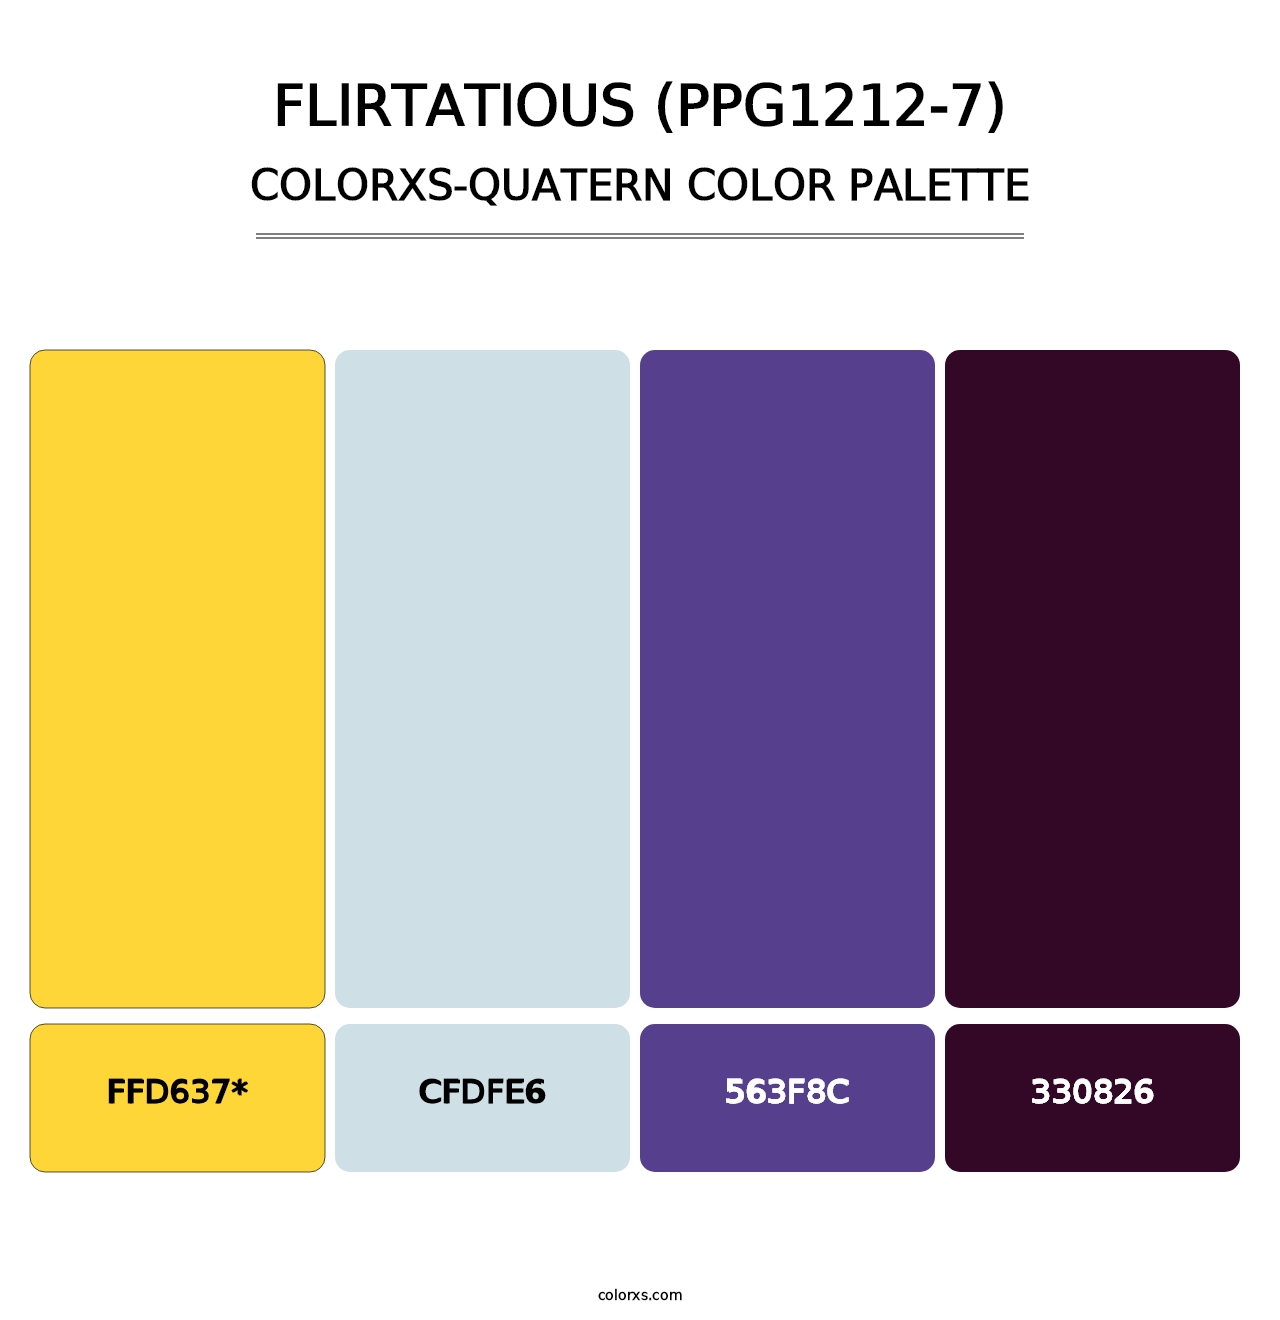 Flirtatious (PPG1212-7) - Colorxs Quatern Palette